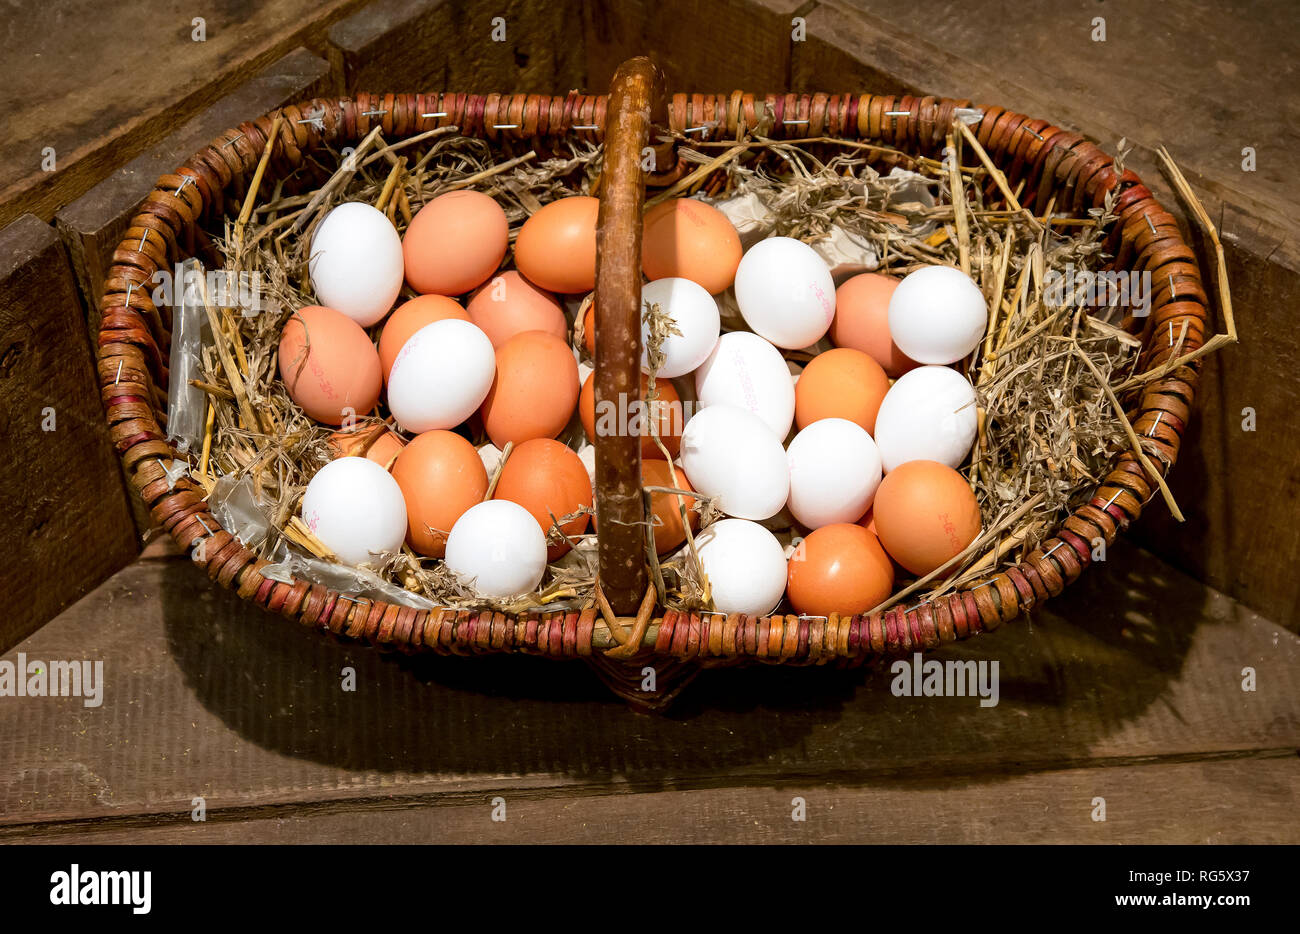 Marrone e bianco uova giacente sulla paglia in un cesto di vimini, farm shop, asparagi farm Schulte-Scherlebeck, Braune und weisse Eier liegen auf Stroh im Weid Foto Stock